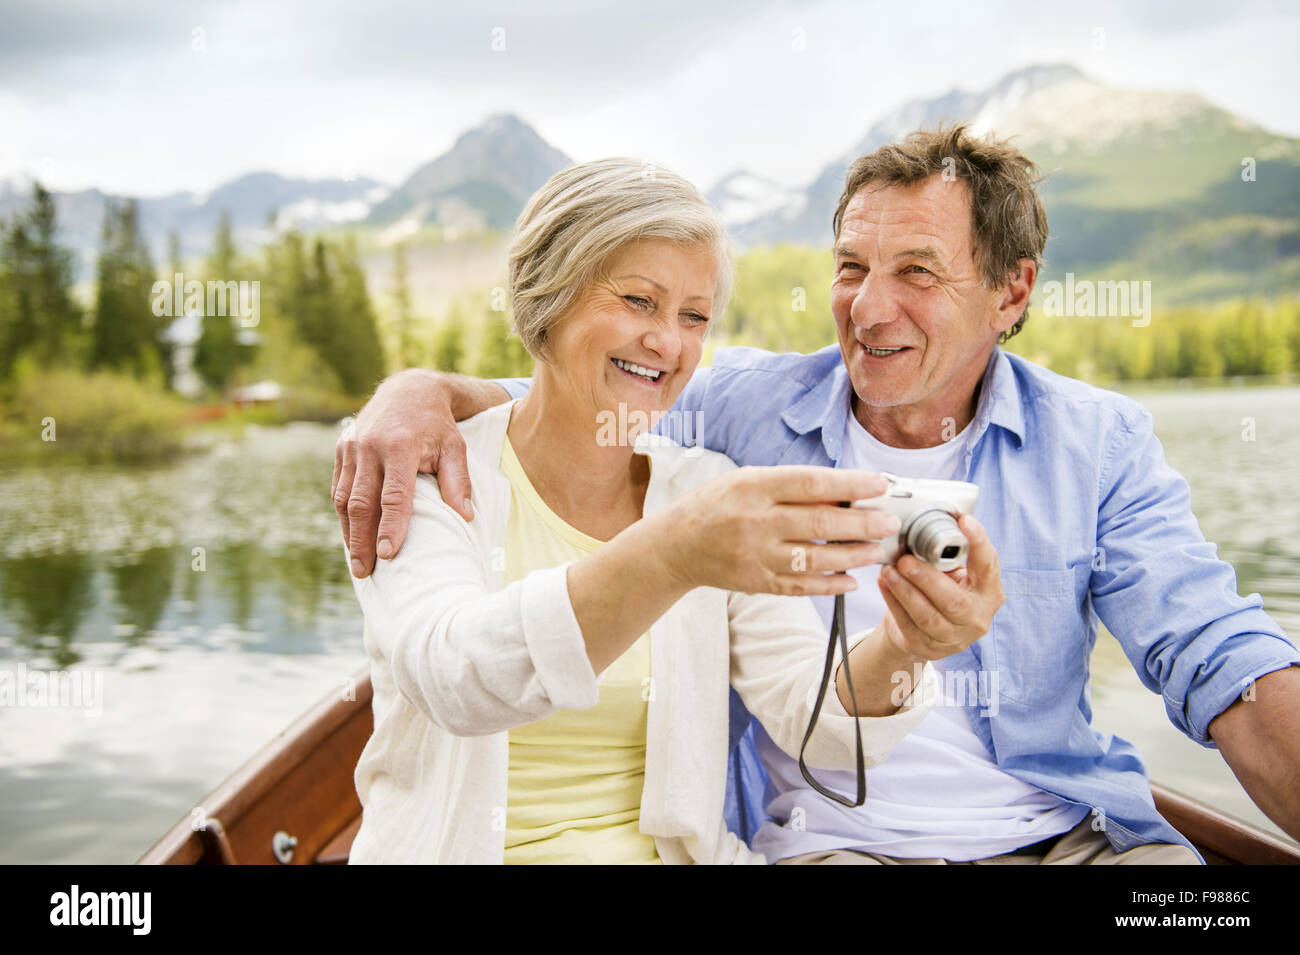 Älteres Paar auf Boot mit Bergen im Hintergrund nehmen selfie Stockfoto